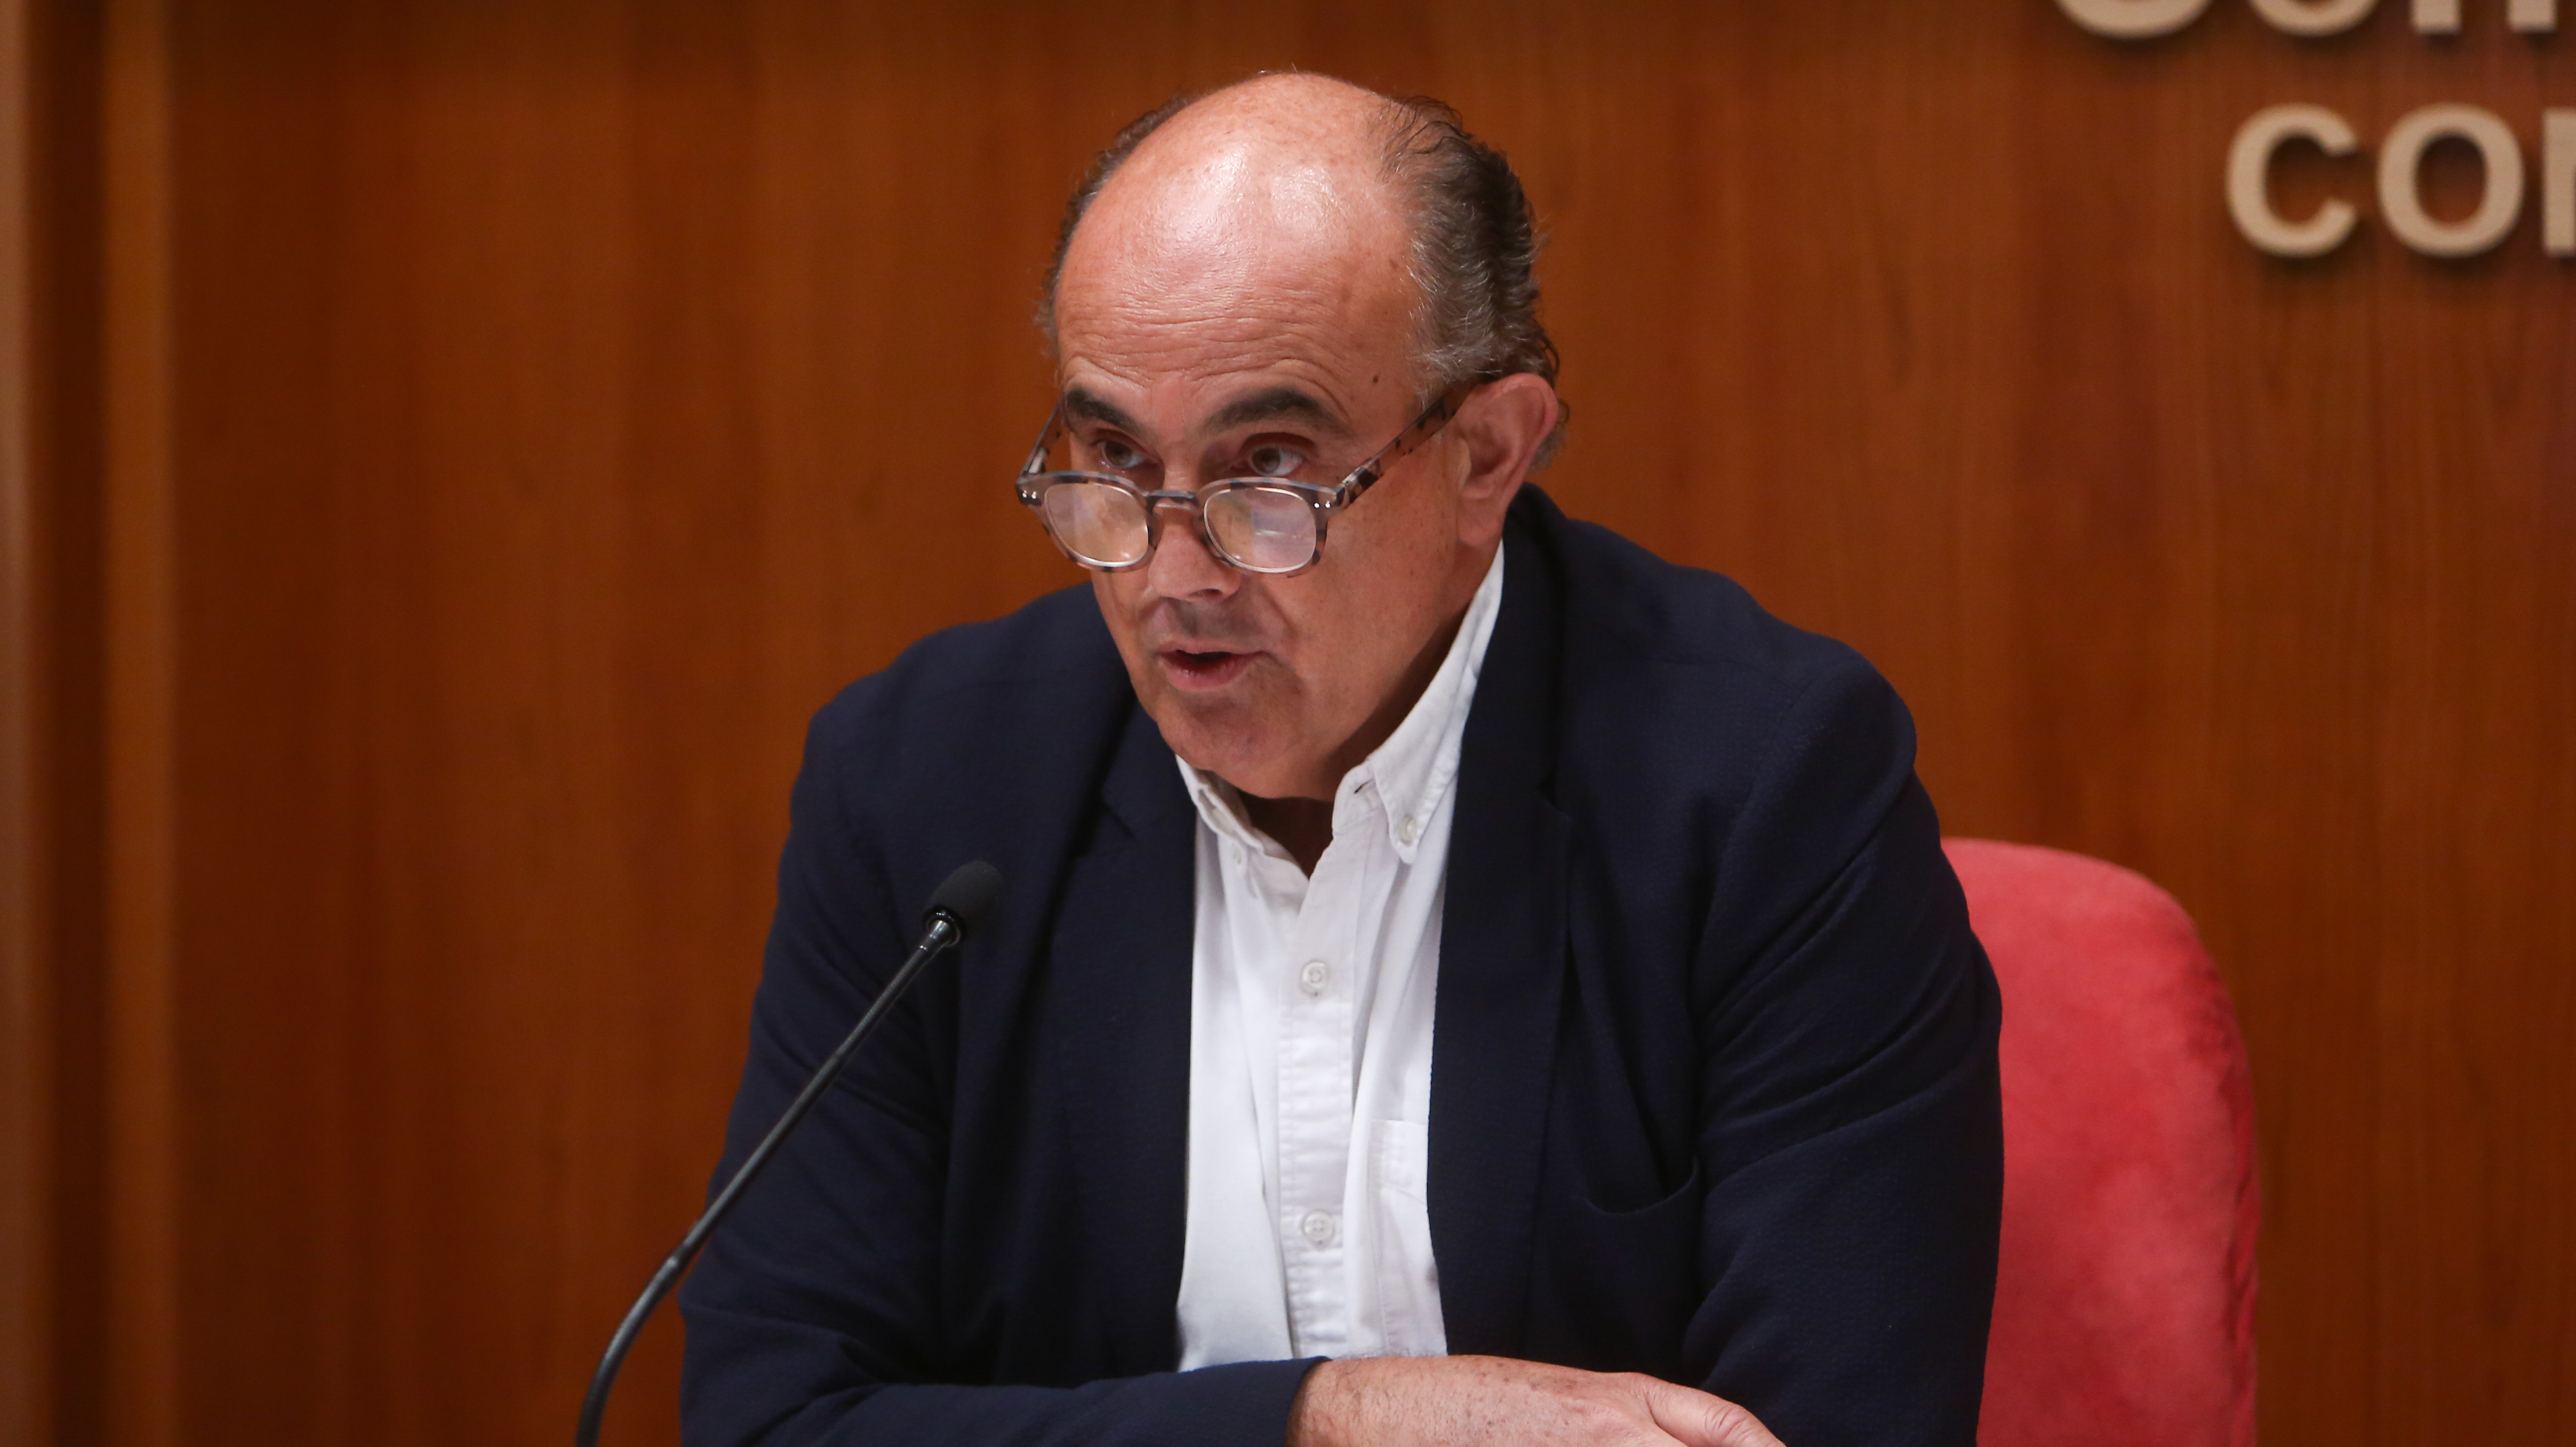 El viceconsejero de Salud Pública y Plan COVID-19 de la Comunidad de Madrid, Antonio Zapatero.